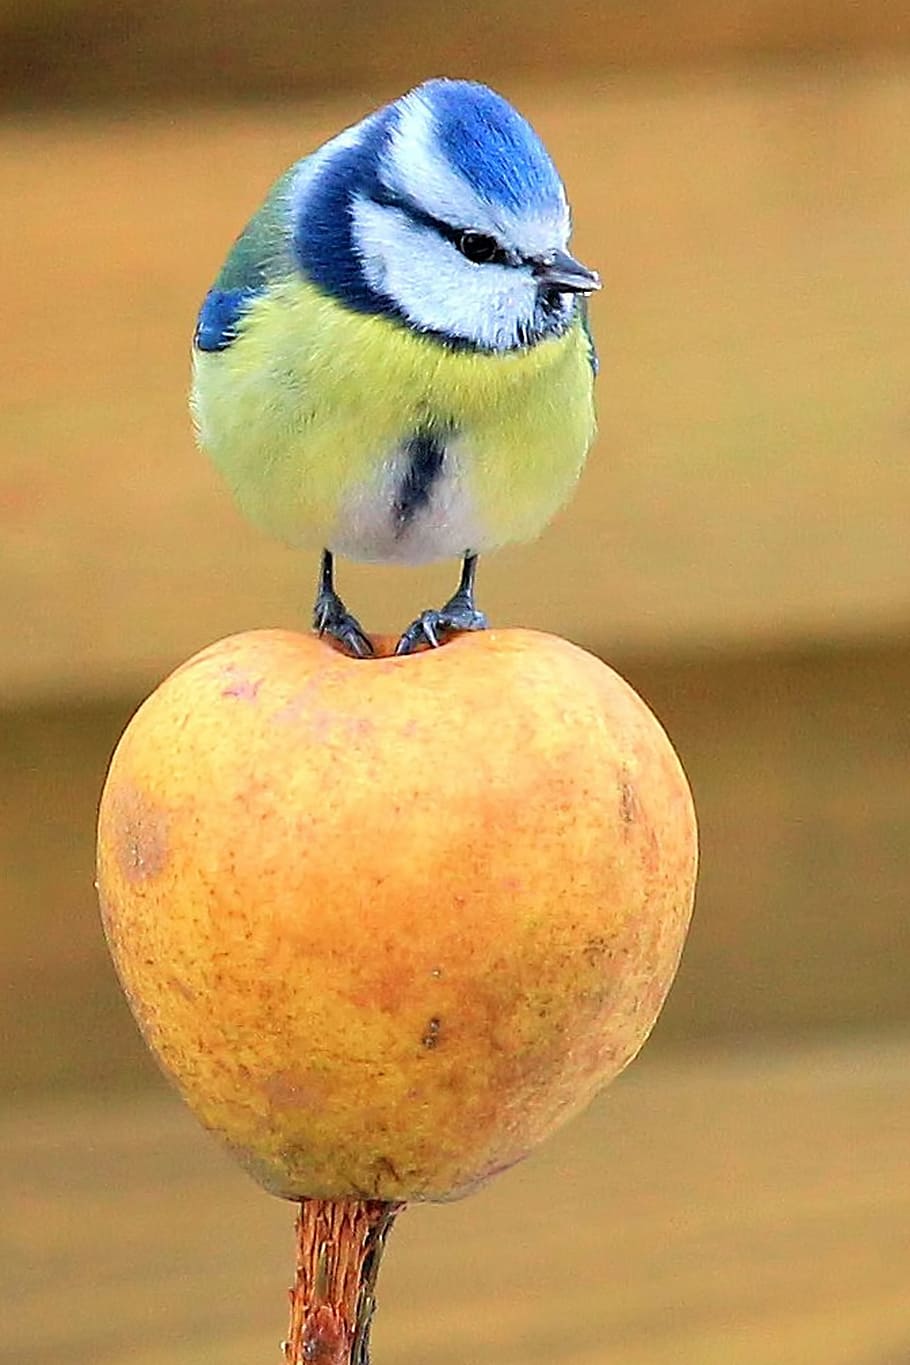 azul, amarillo, pájaro, teta, teta azul, manzana, de pie, pájaro cantor, fotografía de vida silvestre, pájaro pequeño